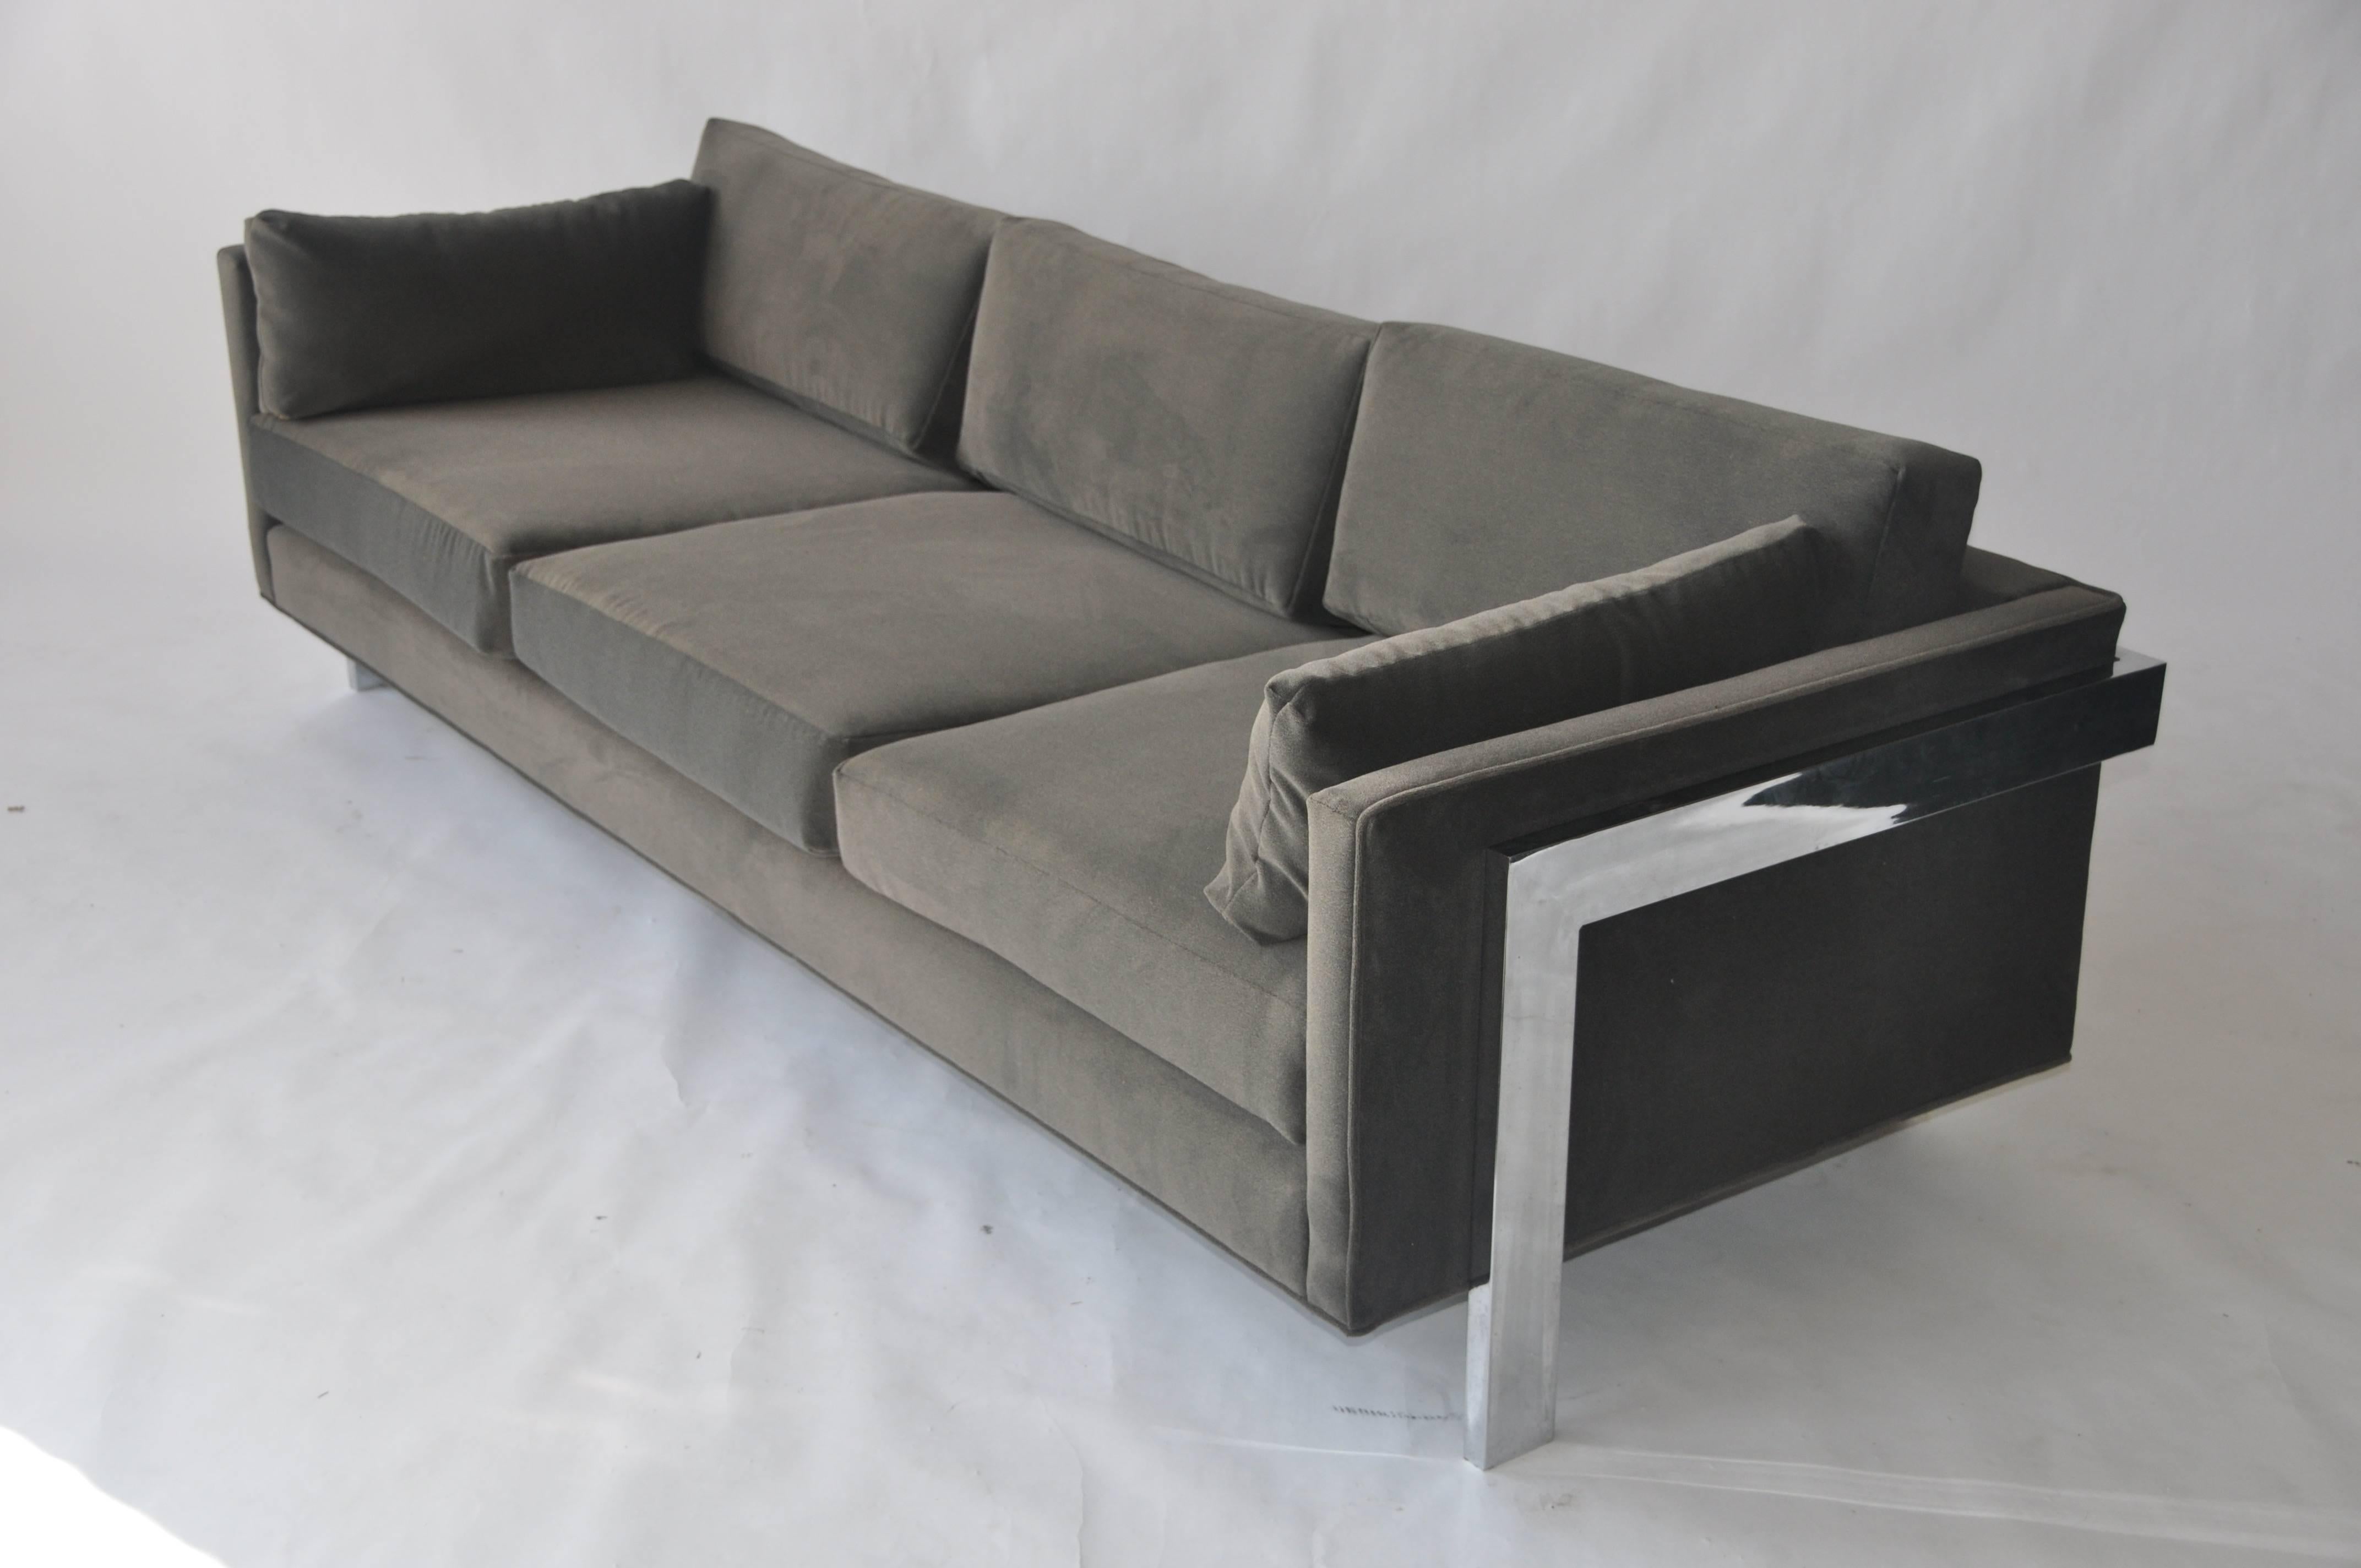 1970s chrome frame sofa.